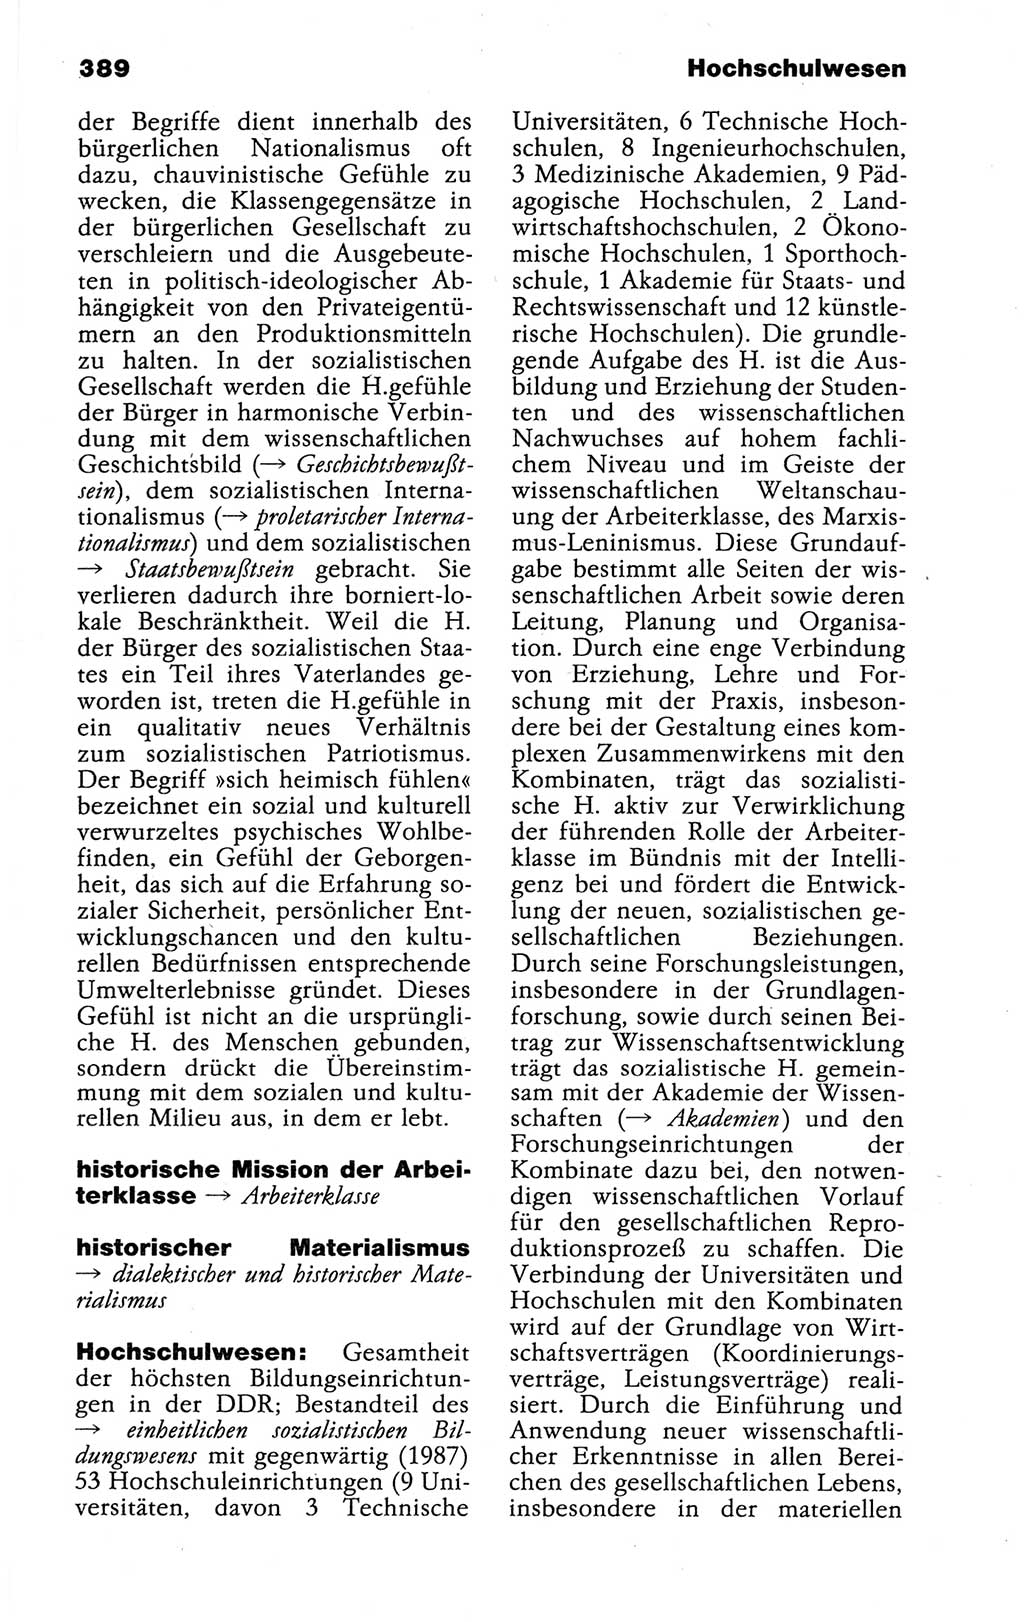 Kleines politisches Wörterbuch [Deutsche Demokratische Republik (DDR)] 1988, Seite 389 (Kl. pol. Wb. DDR 1988, S. 389)